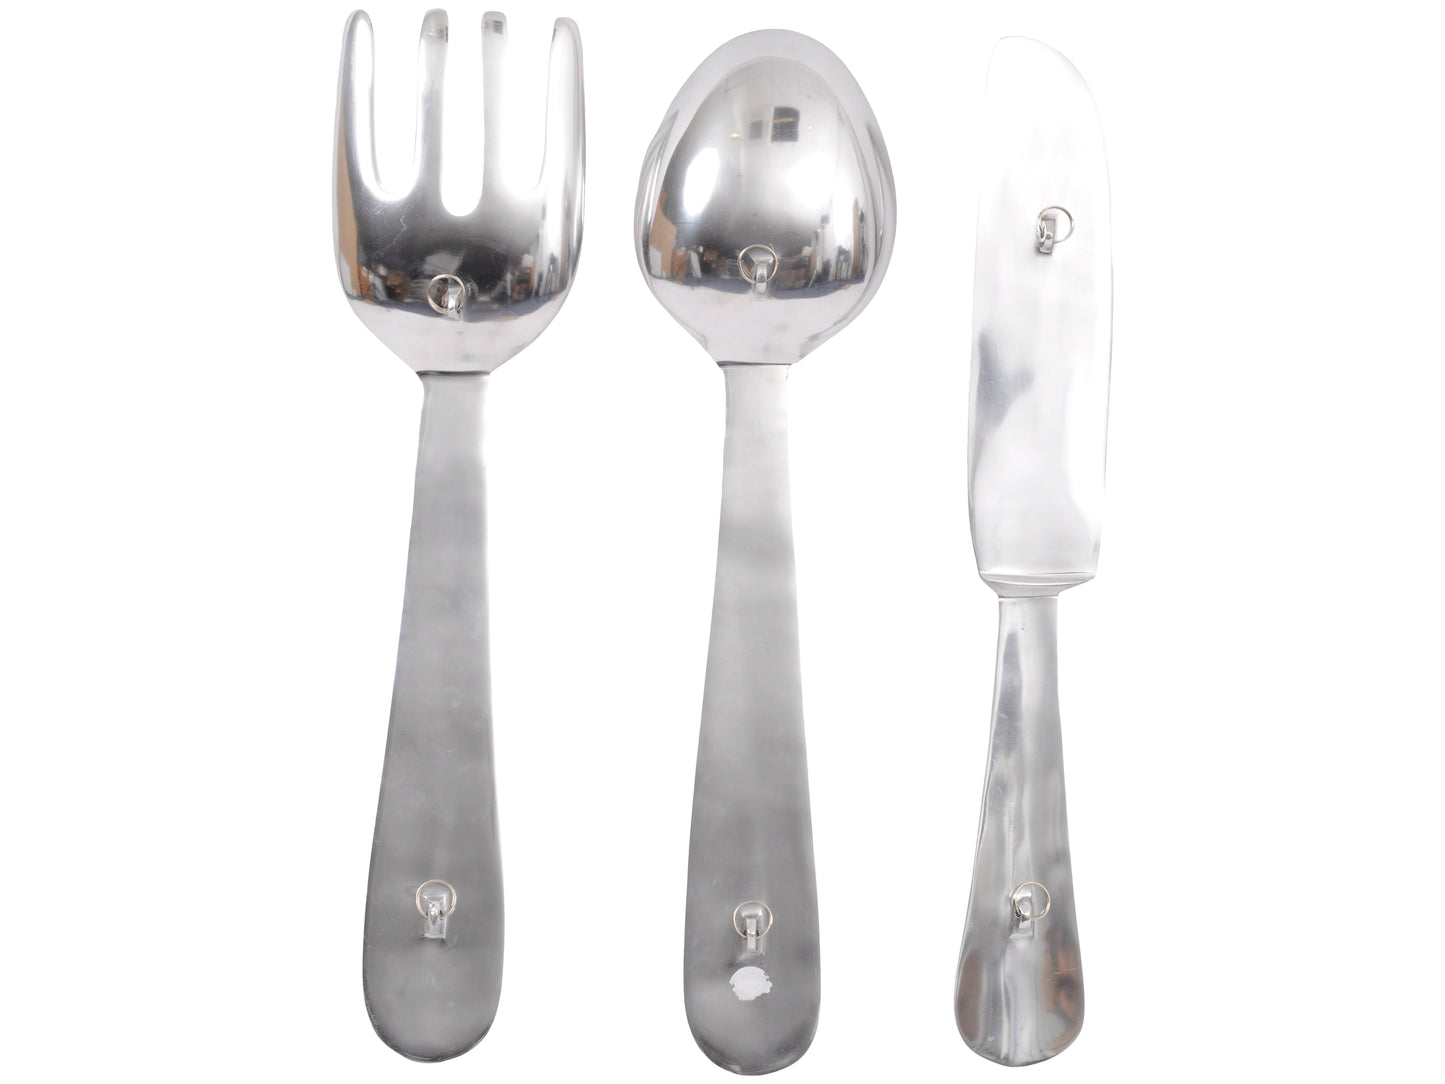 XL Aluminium Cutlery Set